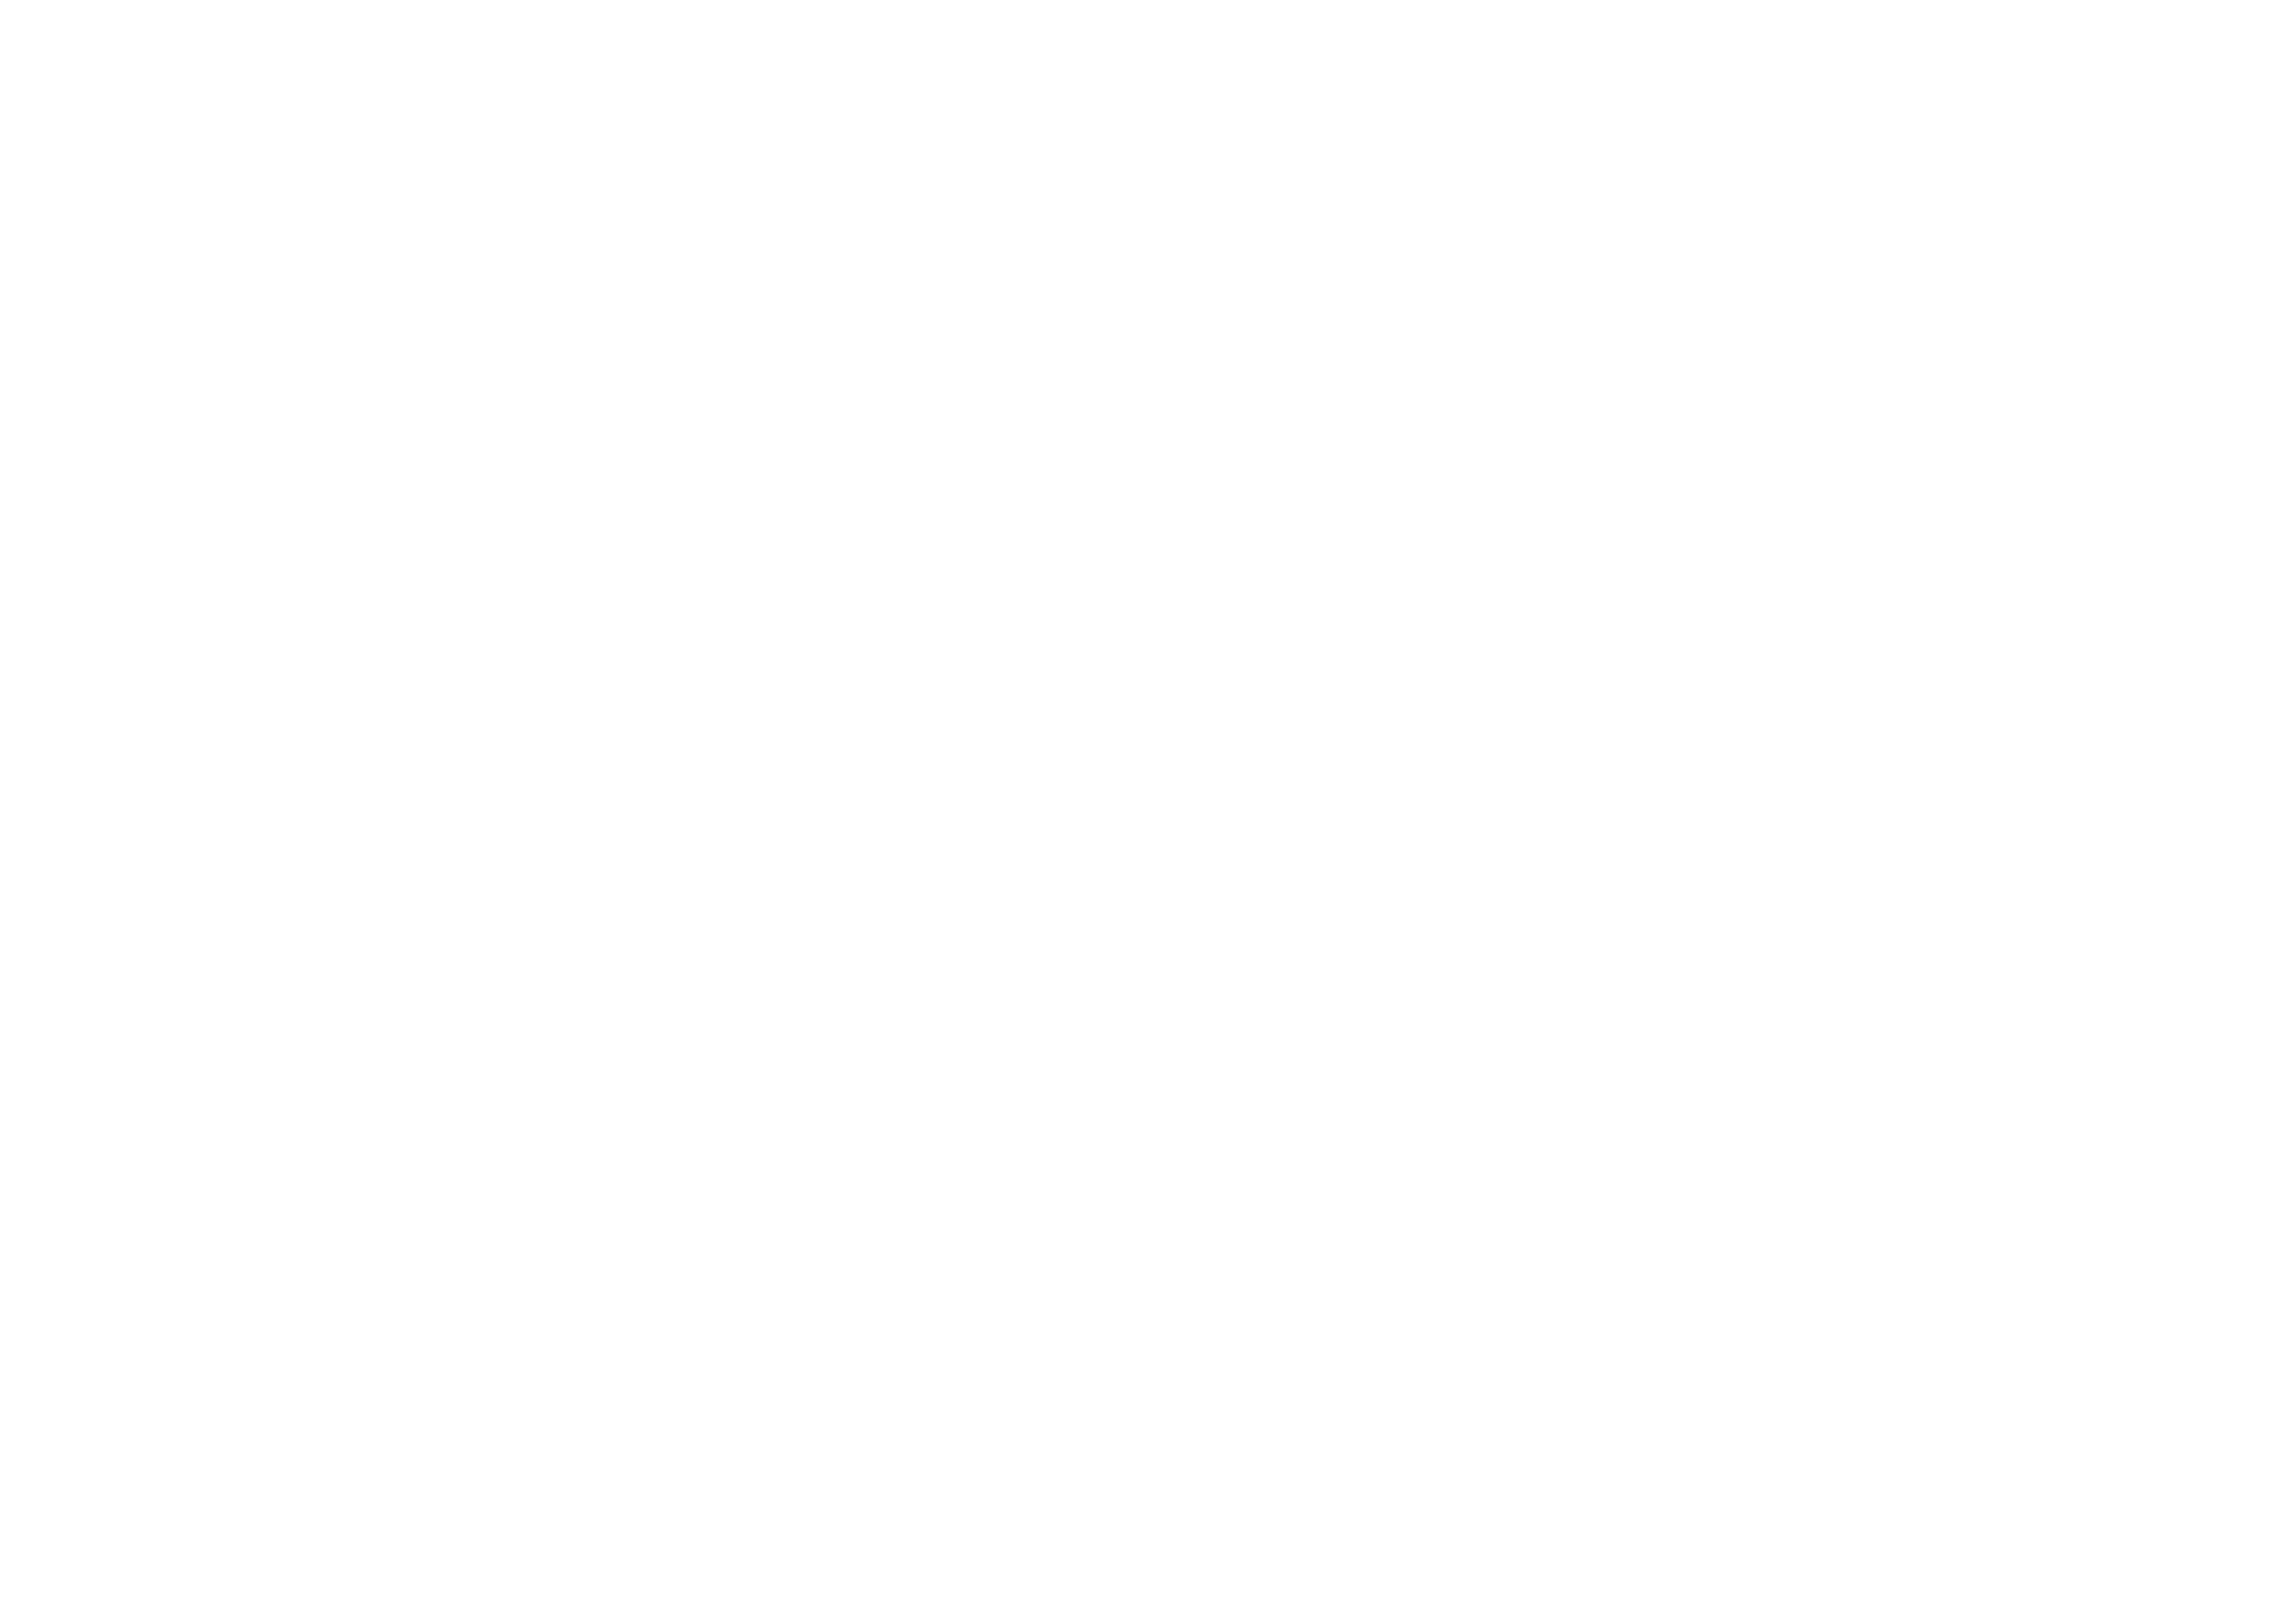 Voices Unite